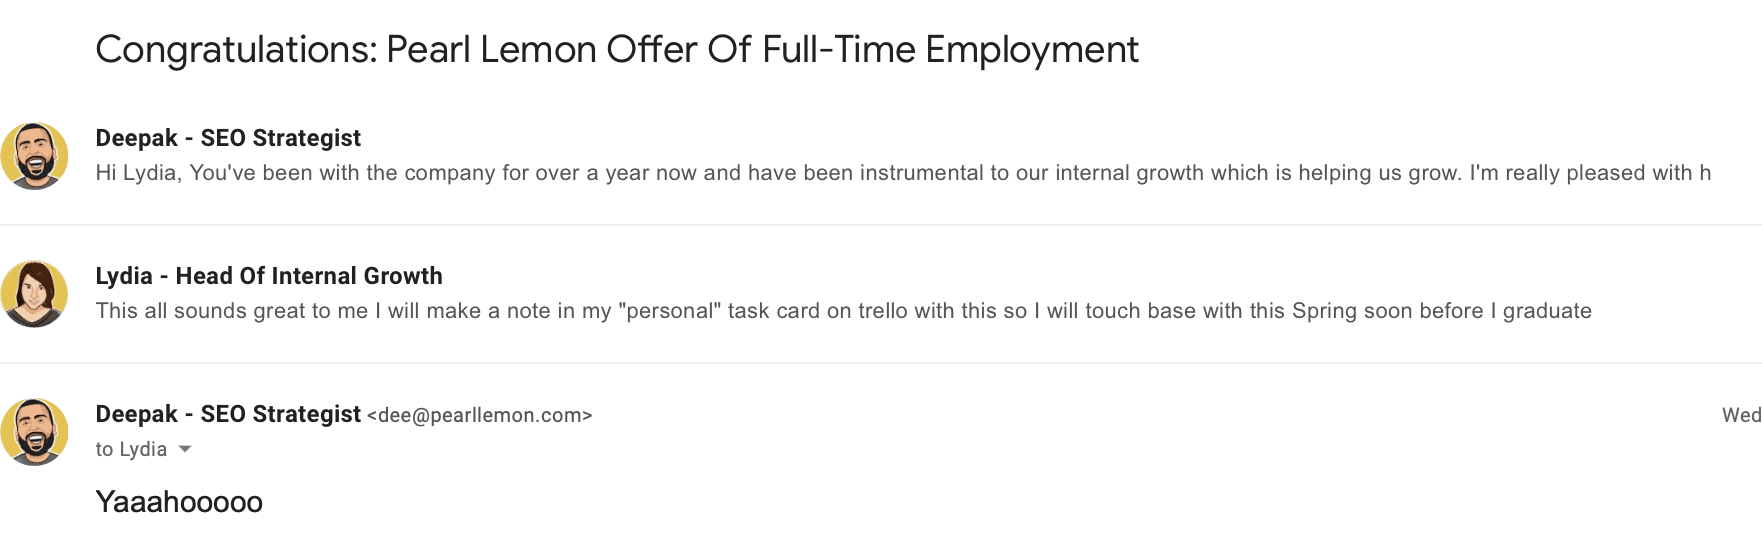 pearl-lemon-full-time-employment